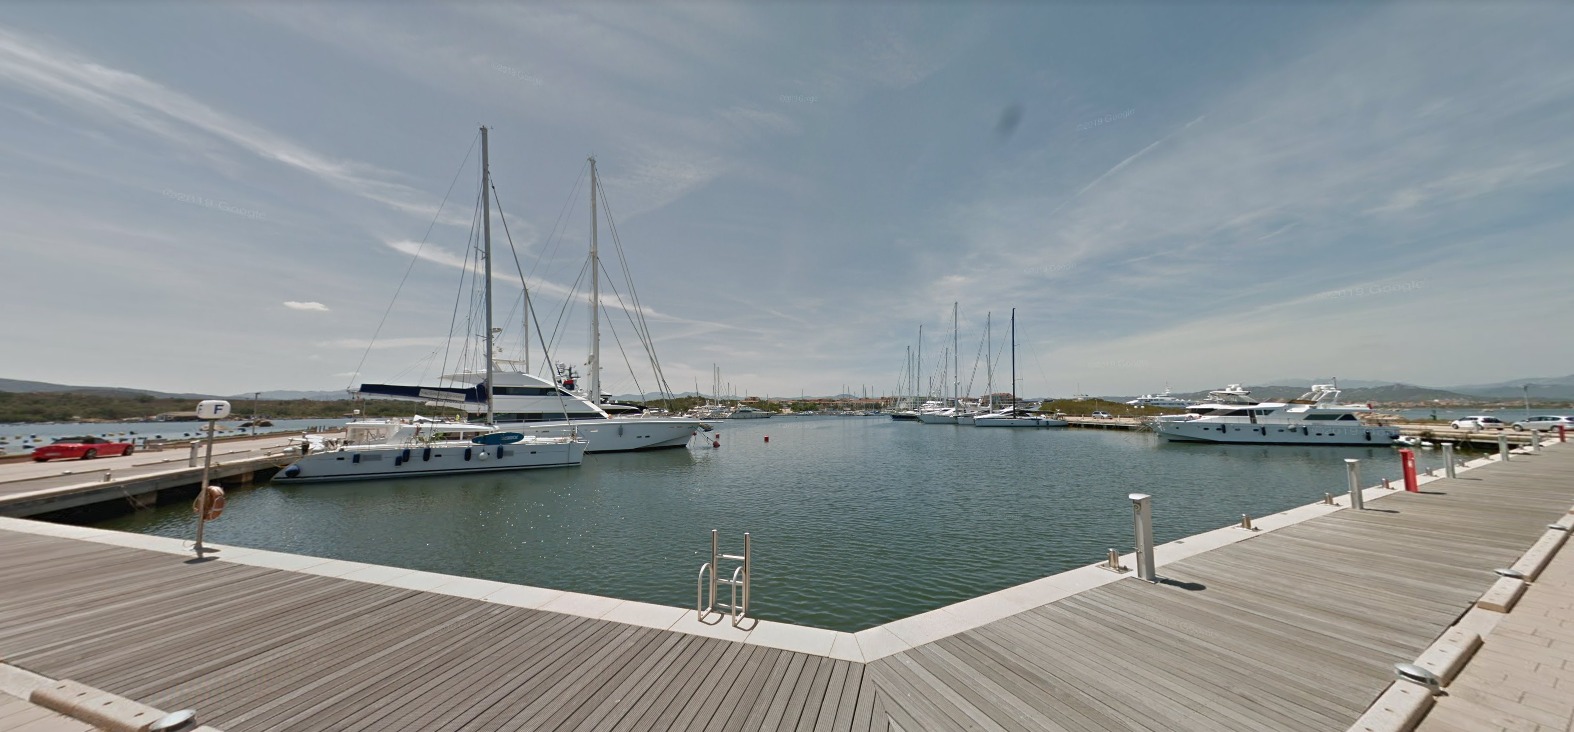 Olbia, alla Marina di Olbia maxi yacht da 100 metri: ok dell'Autorità portuale